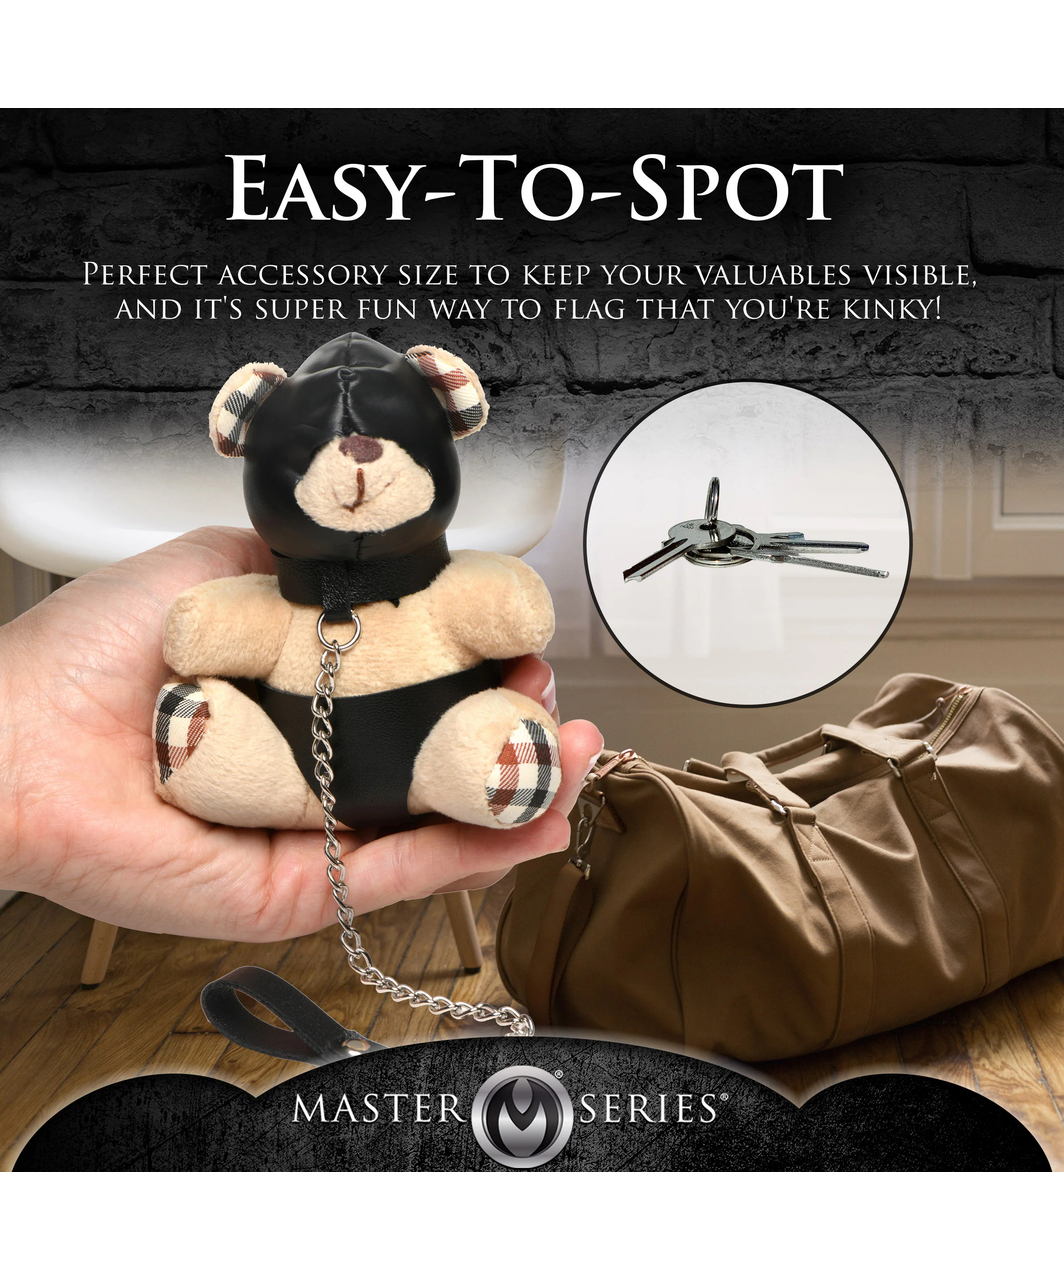 Master Series Hooded Kinky Teddy Bear võtmehoidja